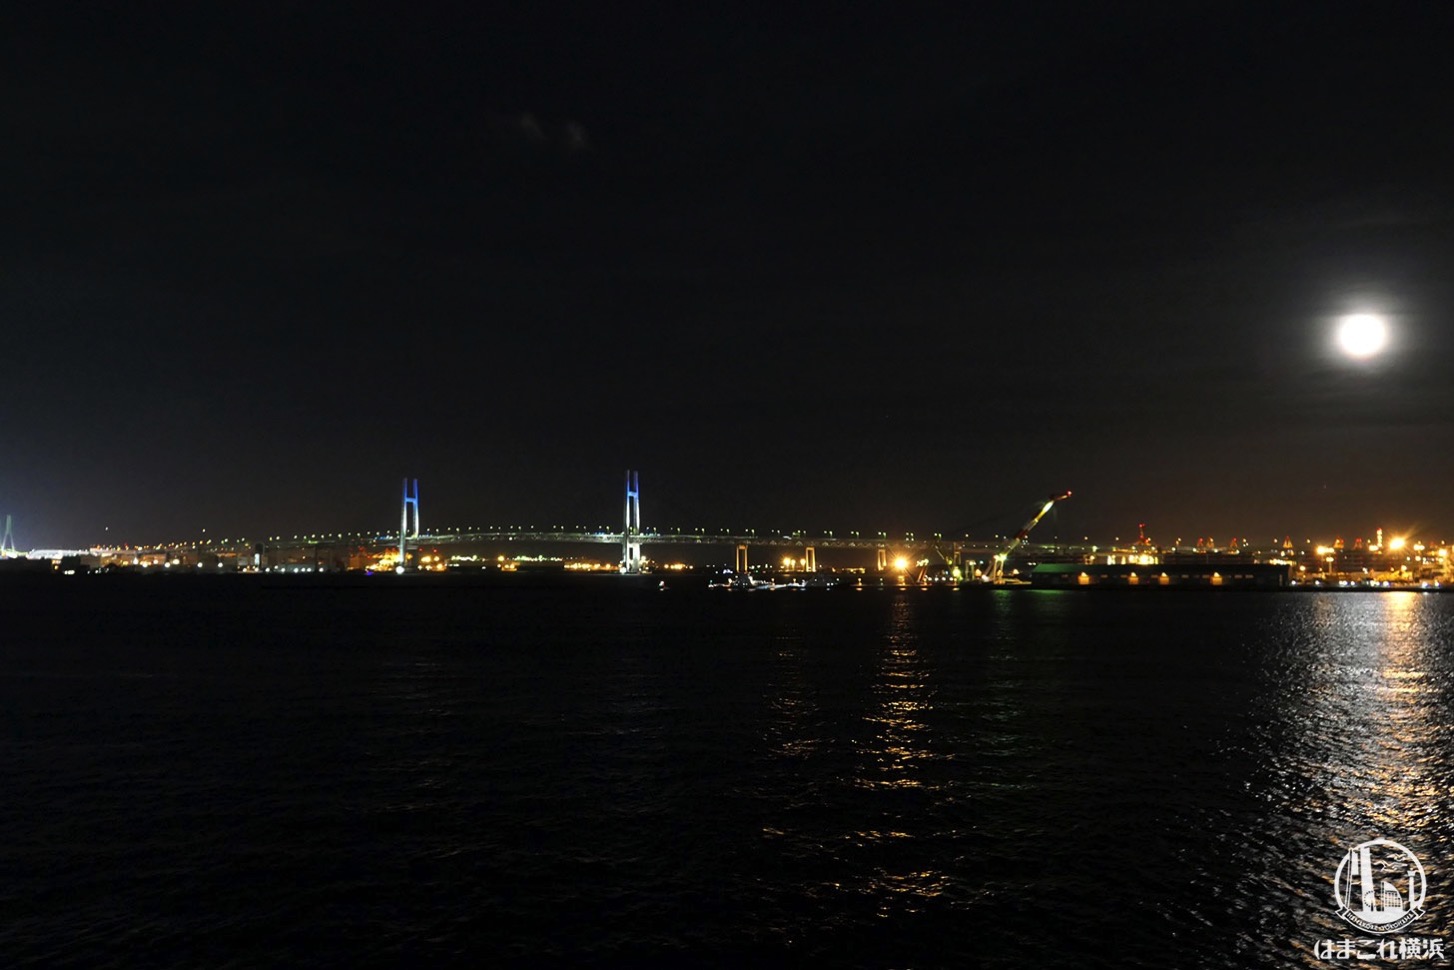 横浜港大さん橋国際客船ターミナル 屋上から見た横浜ベイブリッジ夜景